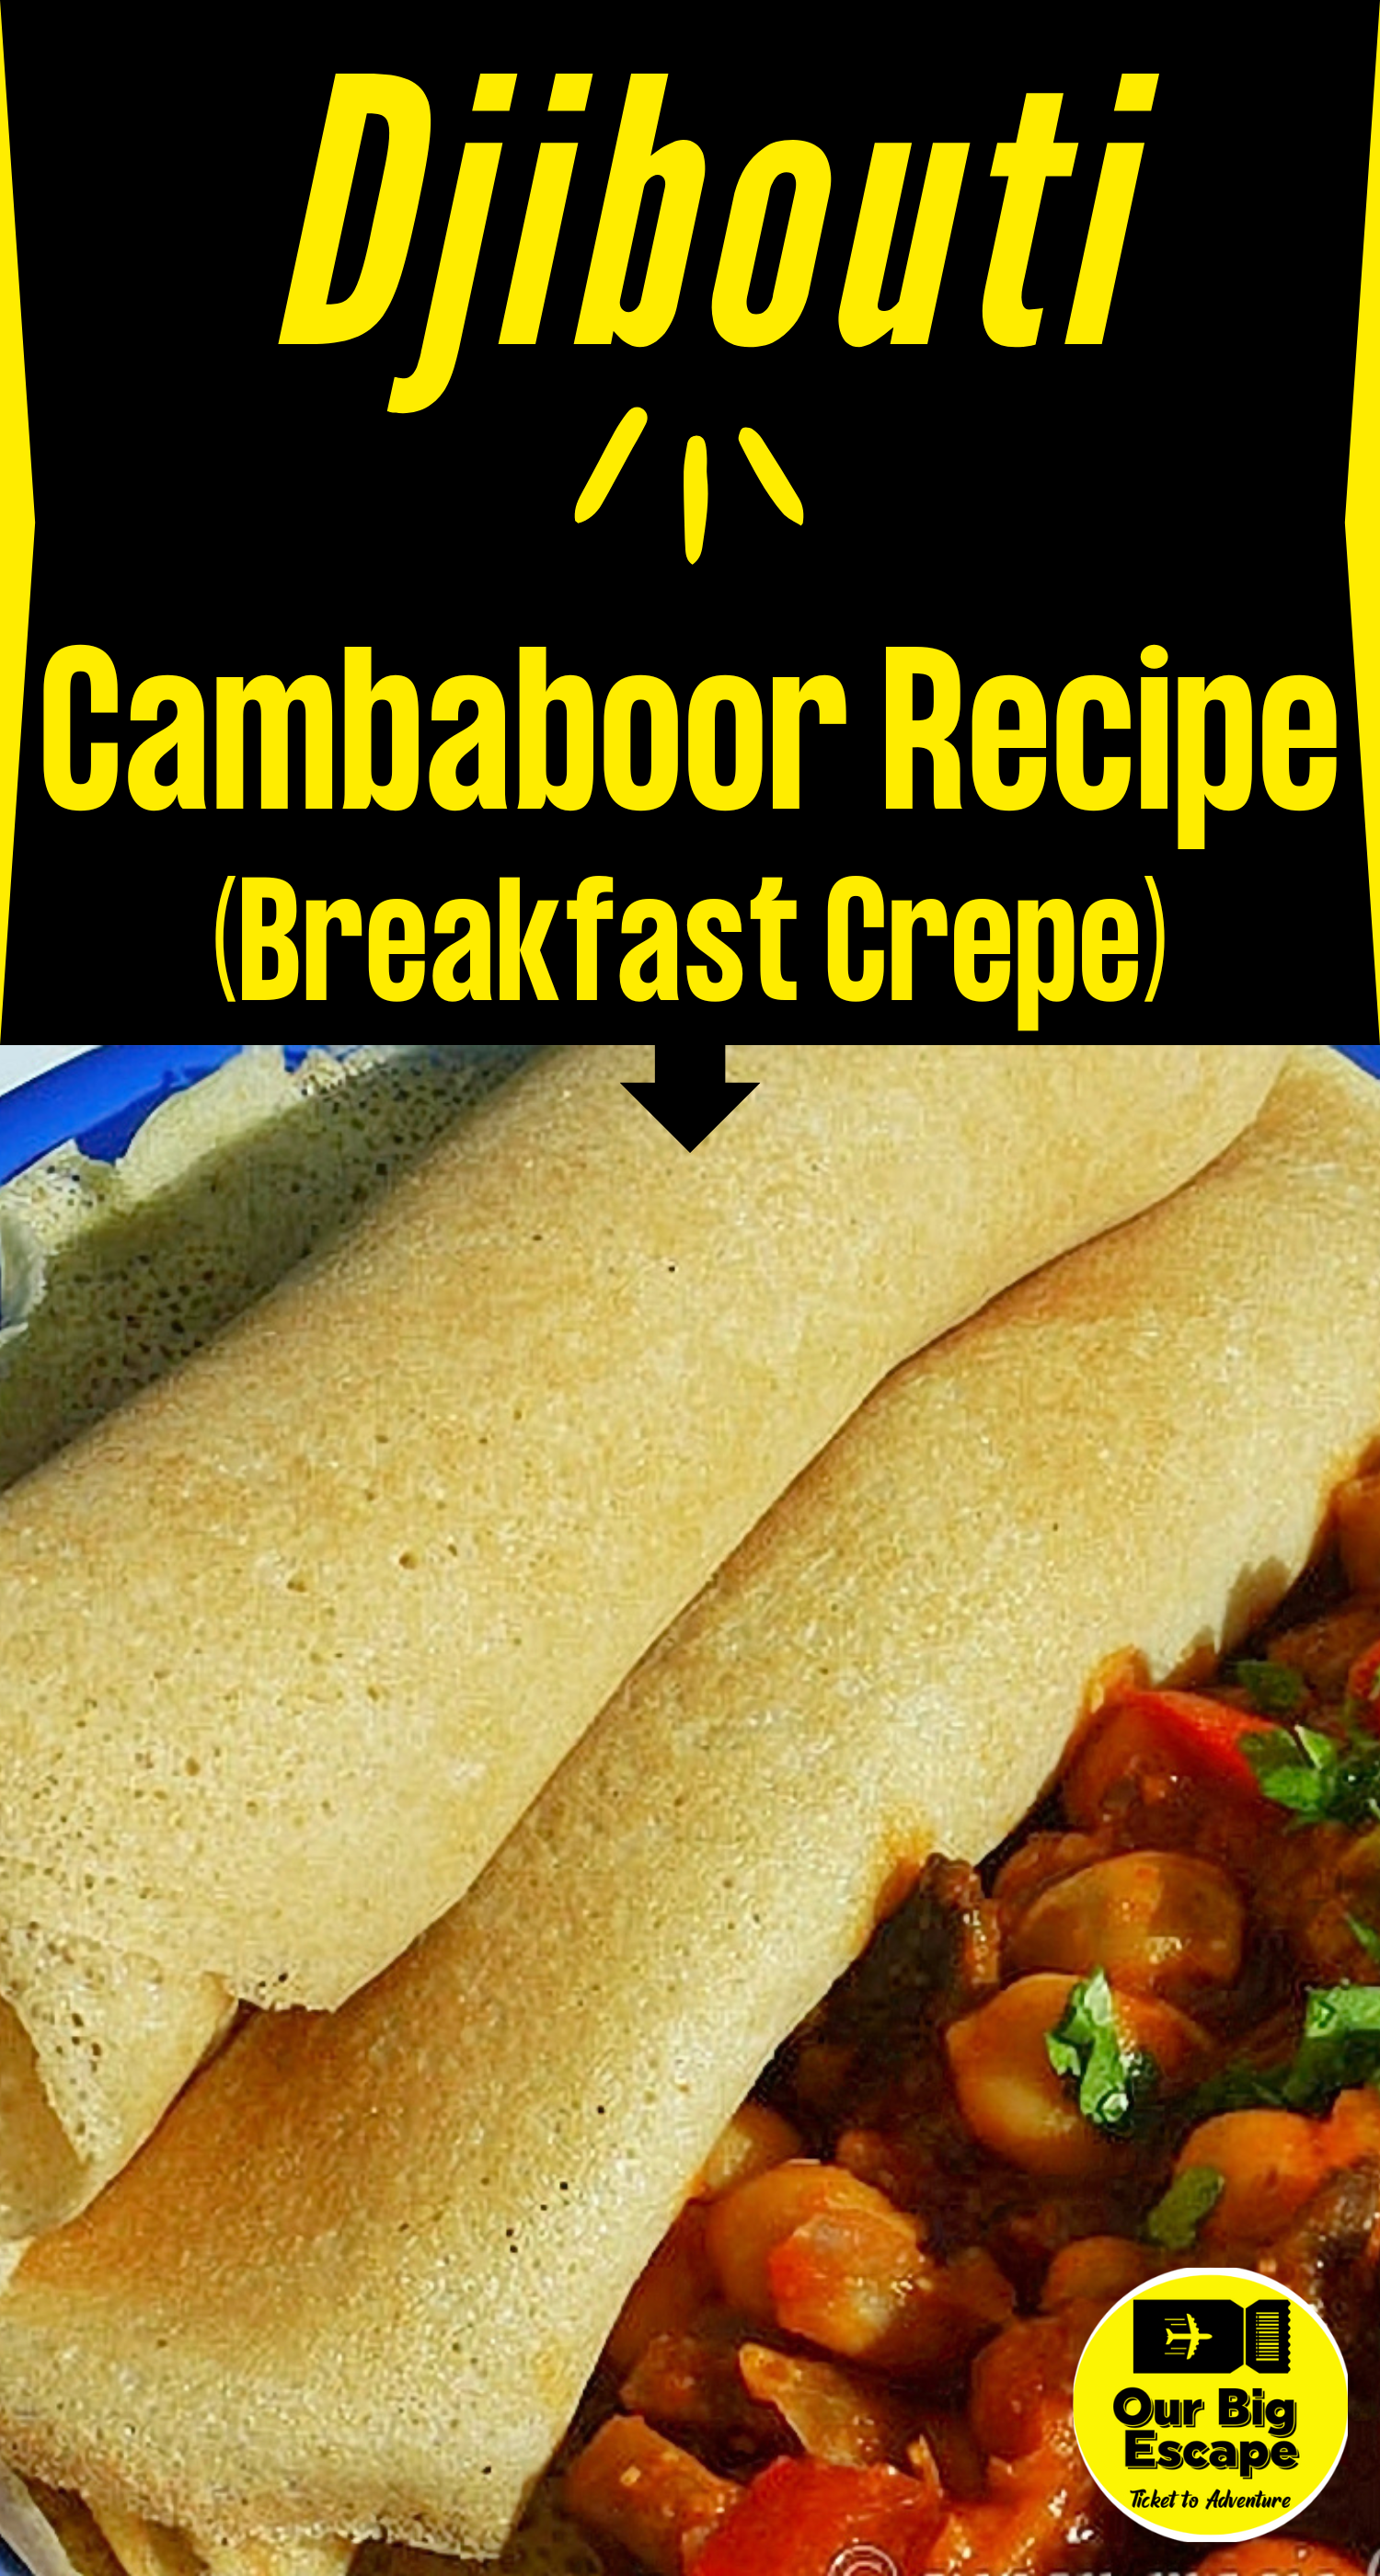 Djibouti Recipes - Cambaboor